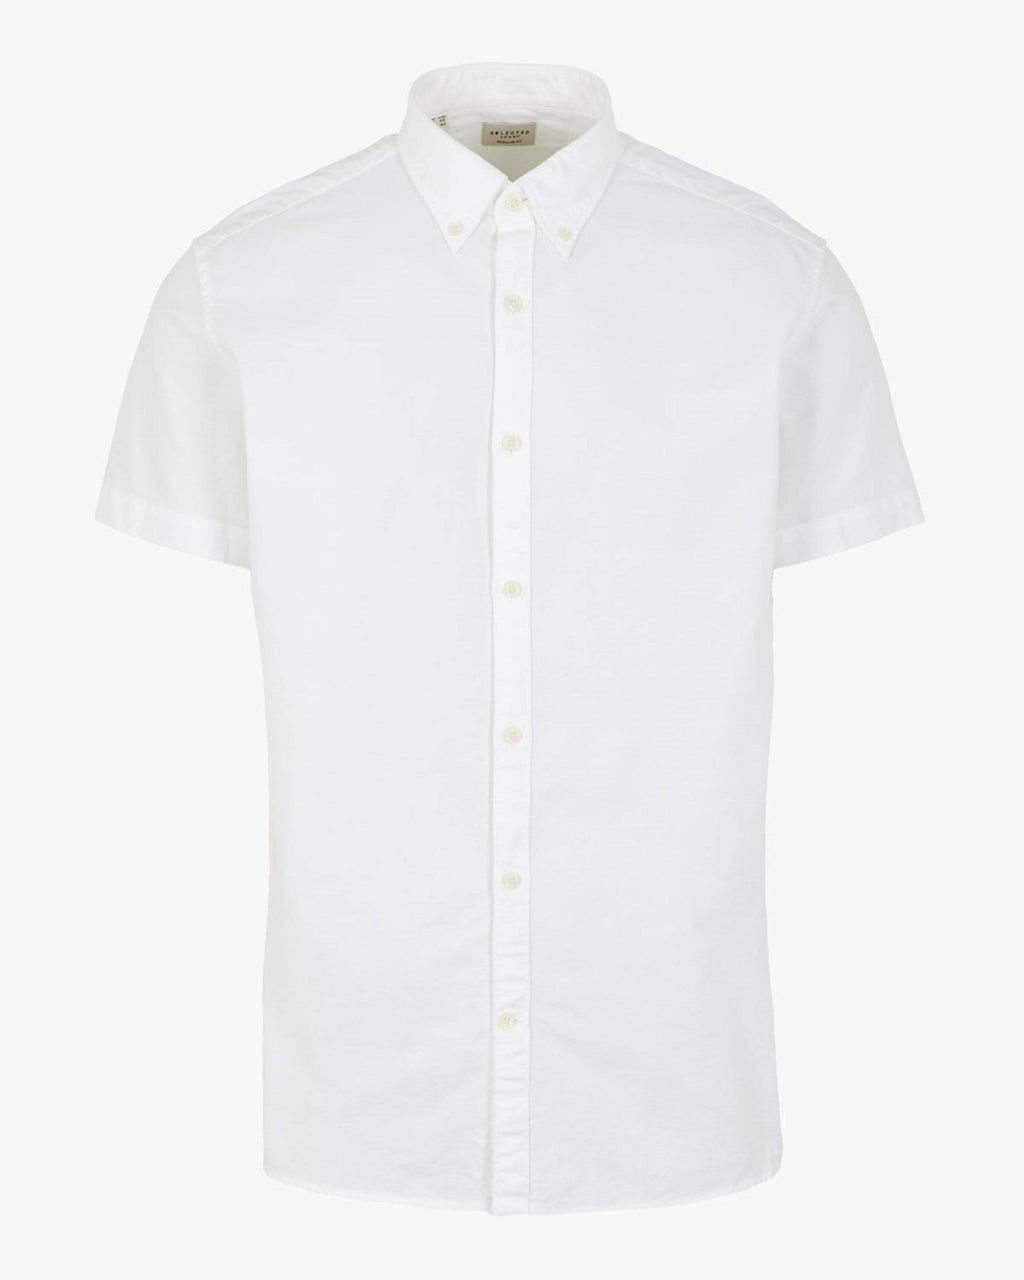 Klasická košeľa s krátkym rukávom - biela